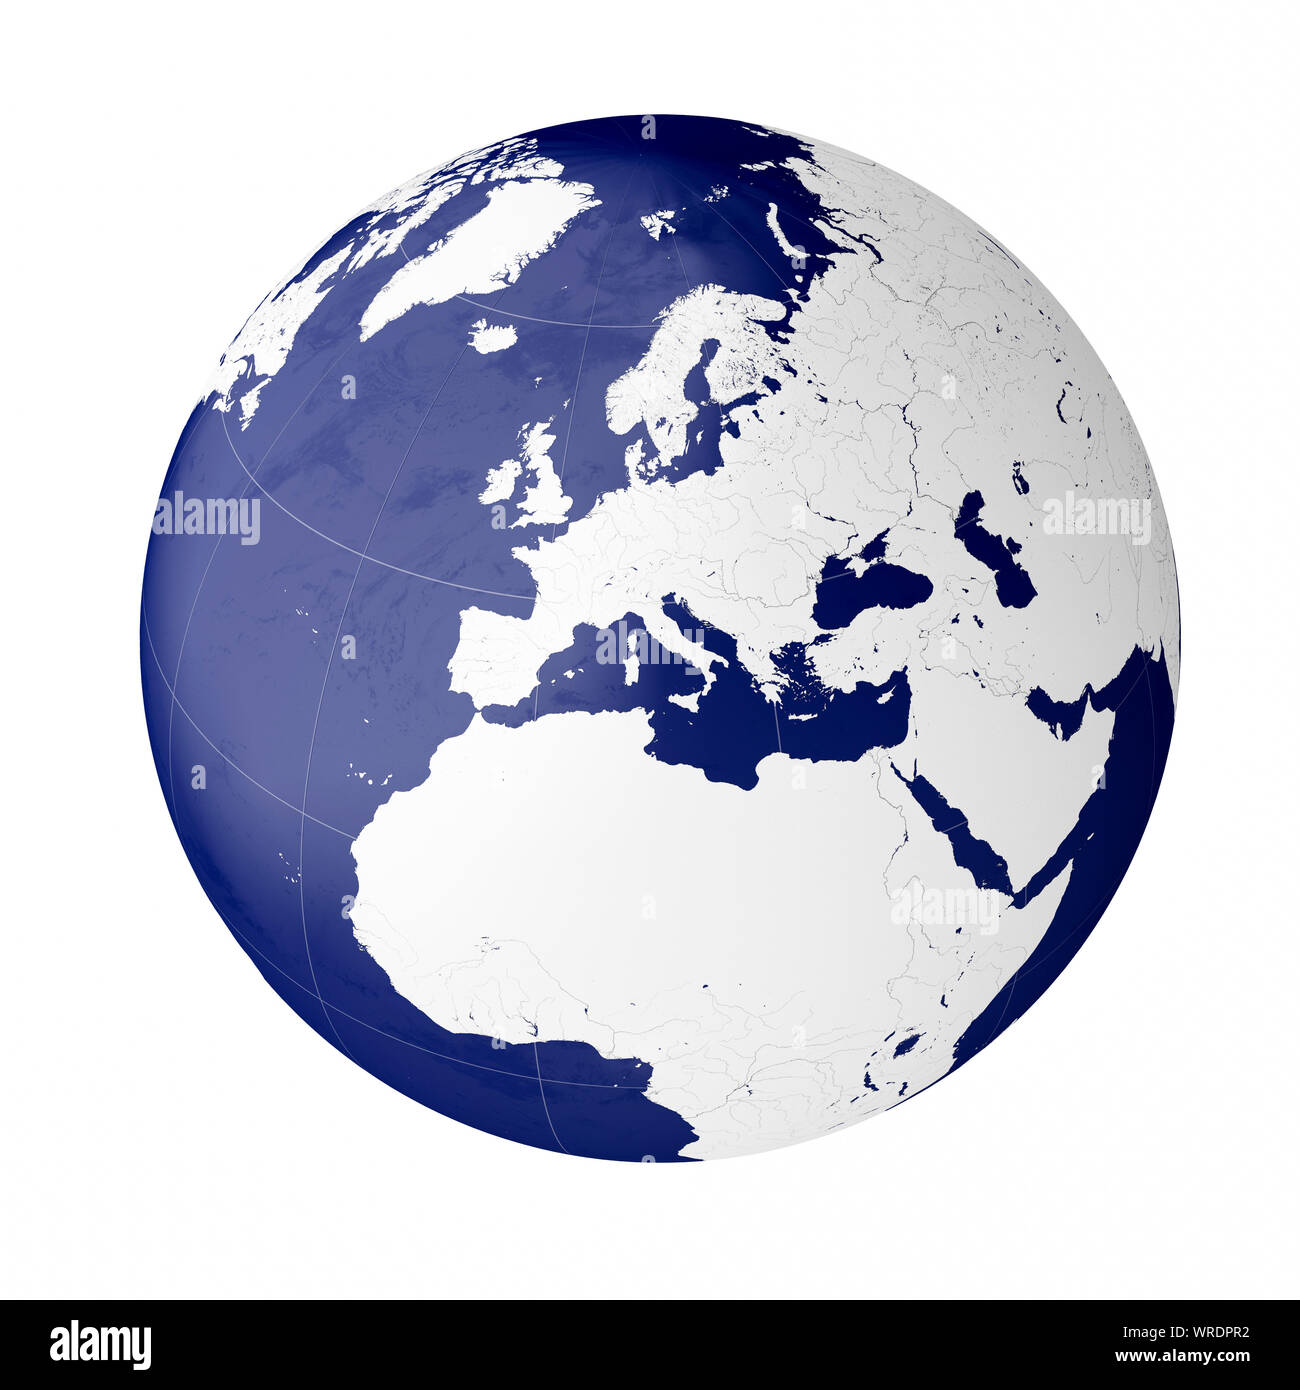 Globus mit den europäischen Kontinent auf dem Planeten Erde Stockfoto